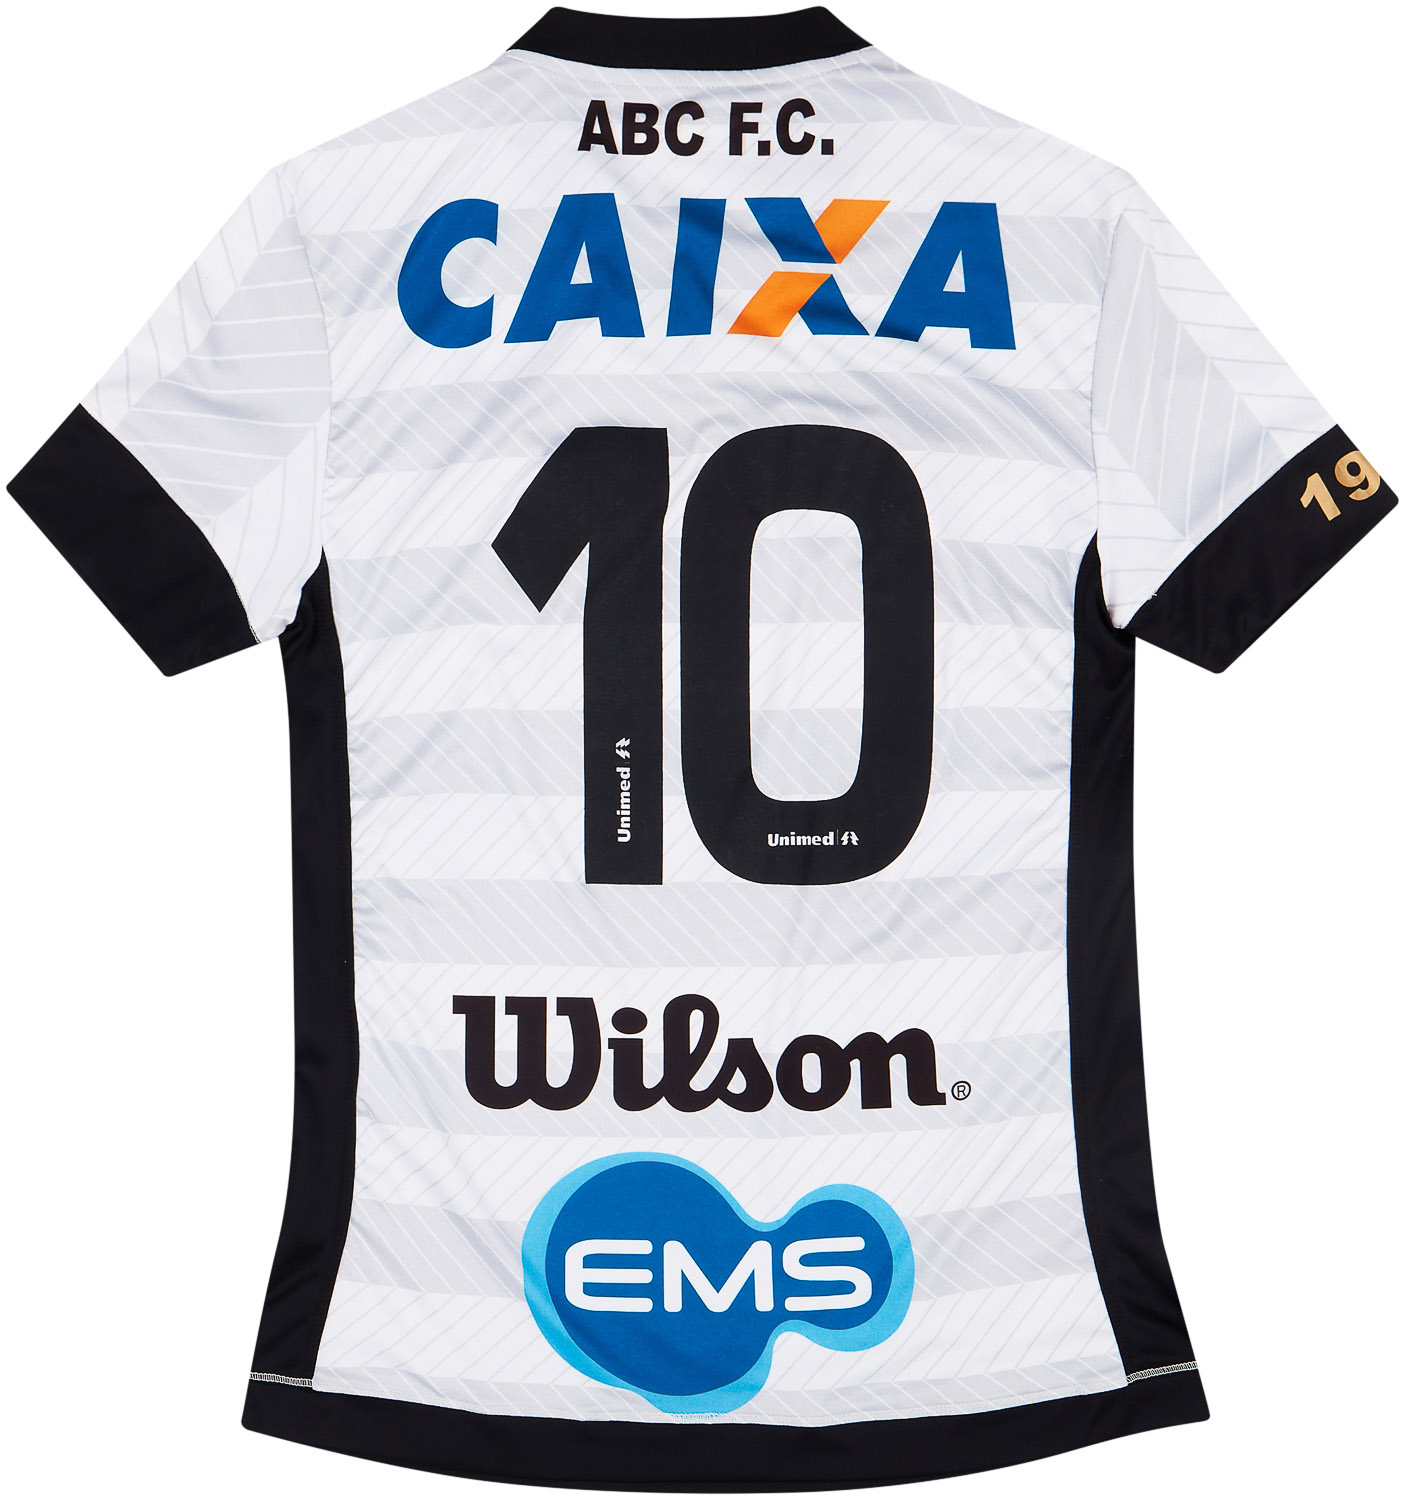 2015 ABC FC '100 Year' Anniversary Shirt #10 - 6/10 - ()